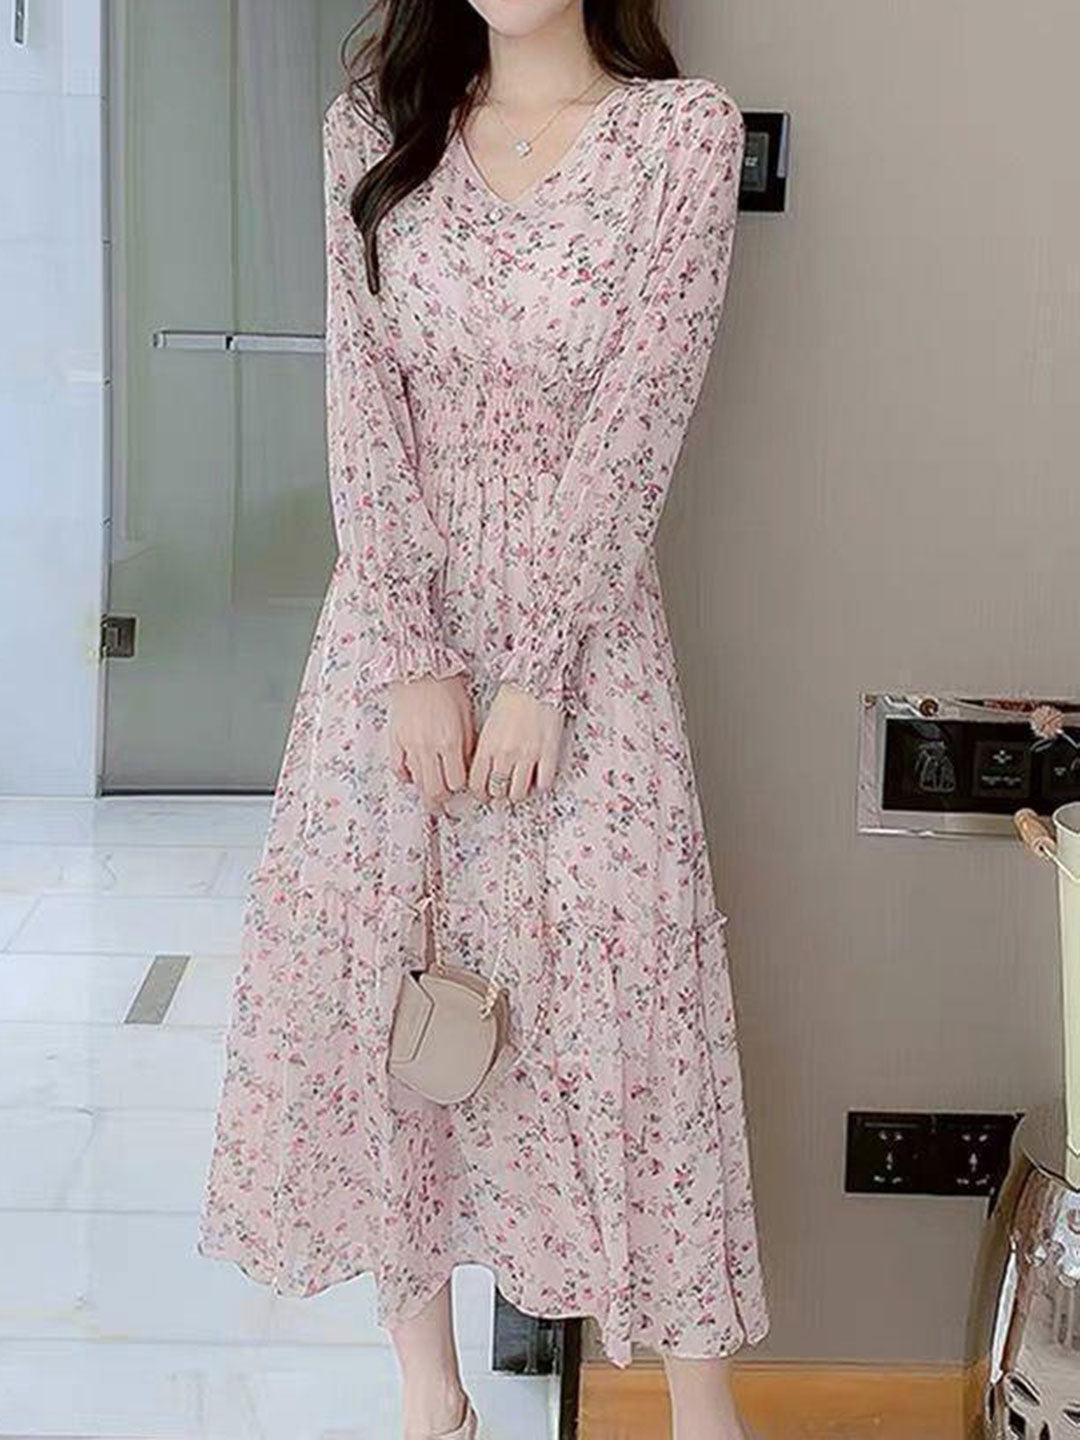 Zoey Classic Floral Ruffle Chiffon Dress-Pink